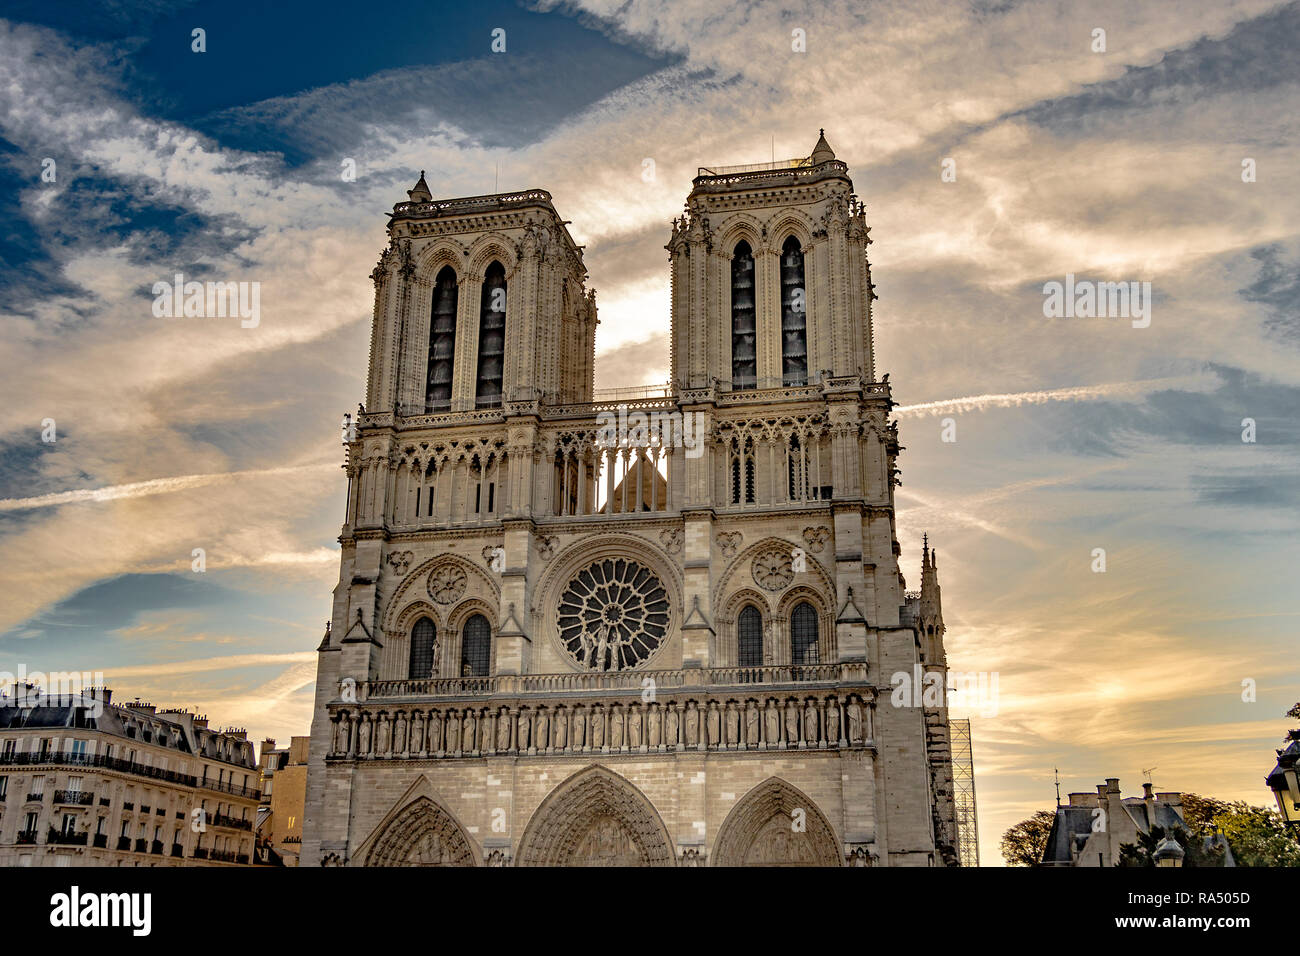 L'intérieur de Notre-Dame de Paris, également connu sous le nom de la Cathédrale Notre Dame une cité médiévale cathédrale catholique sur l'Île de la Cité Banque D'Images